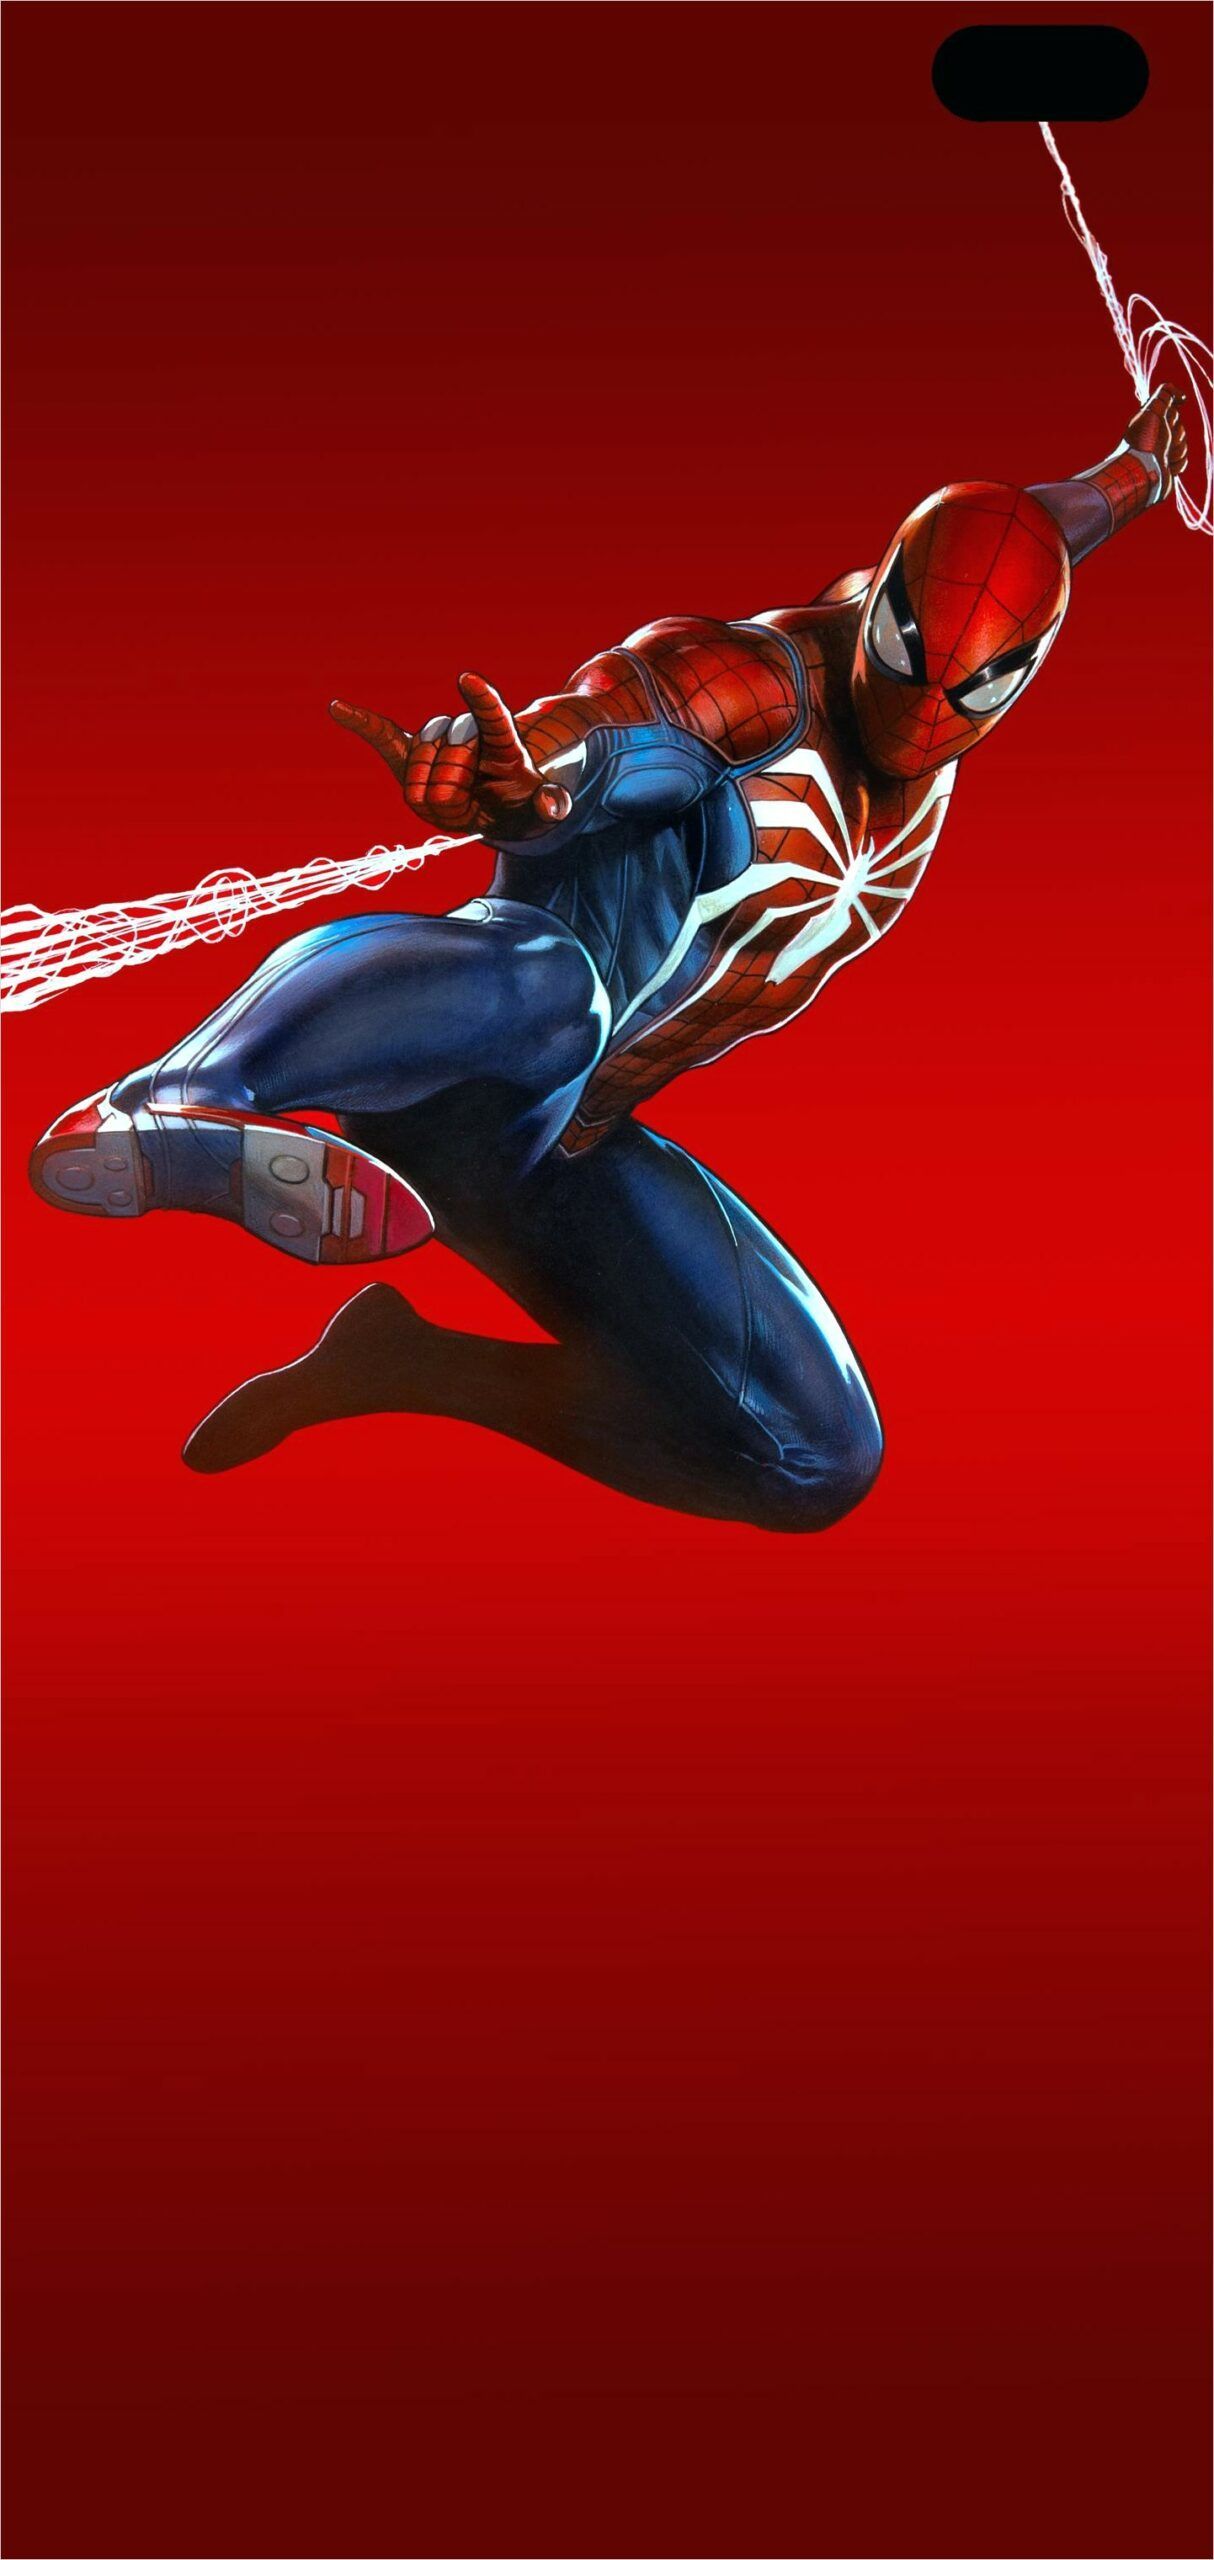 4k Galaxy S10 Plus Spiderman Wallpaper .com